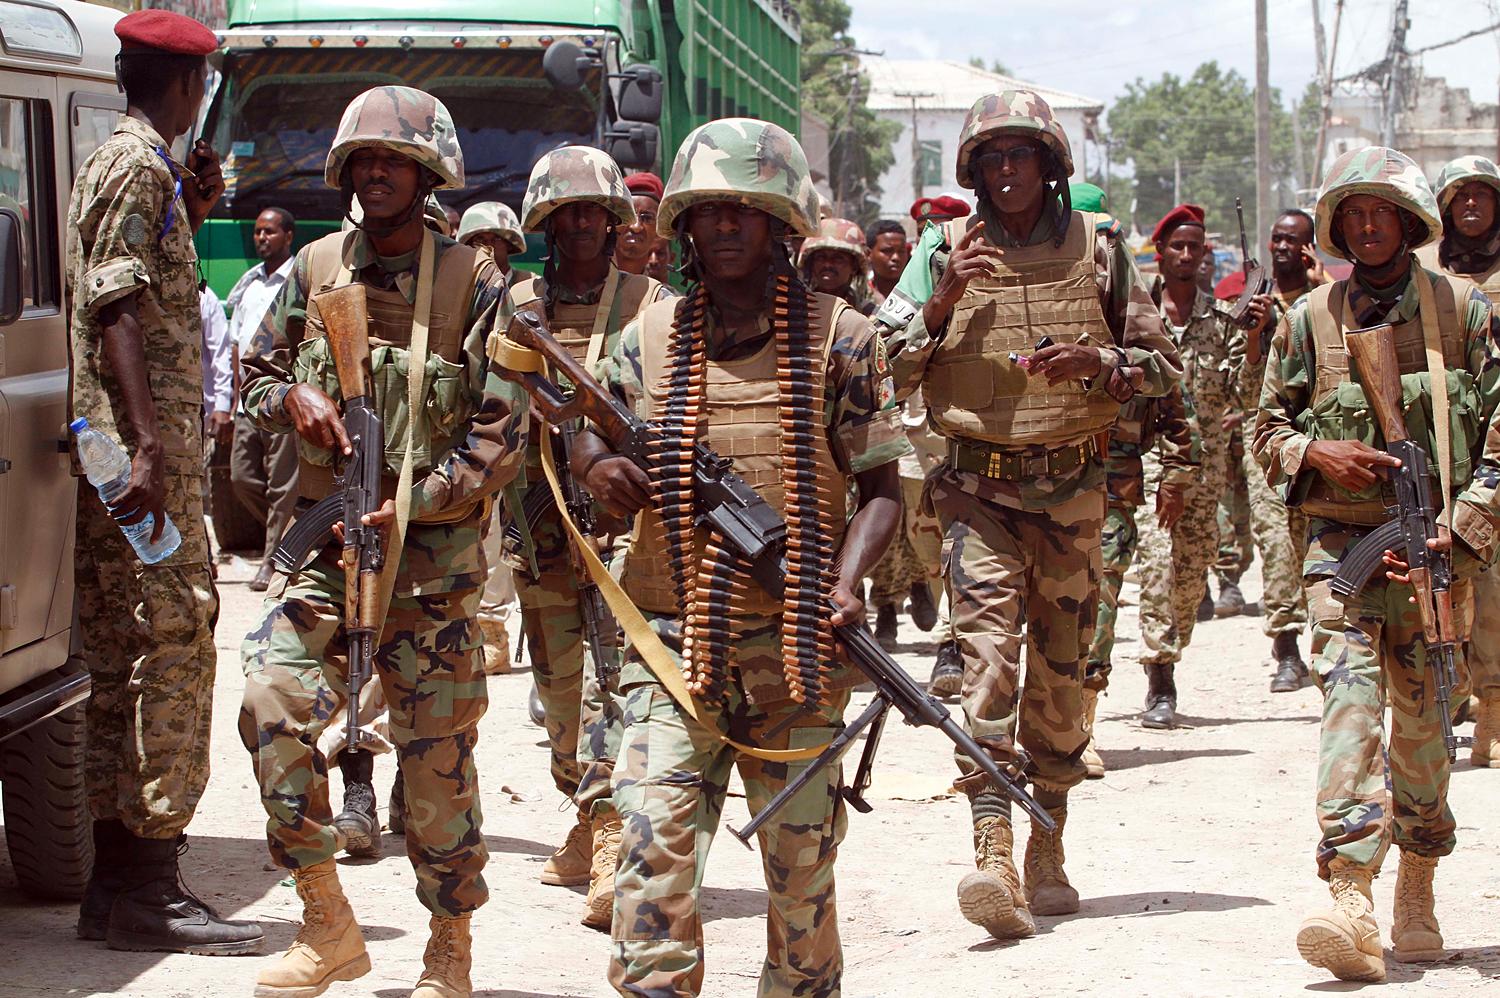 Az Afrikai Unió Szomáliában állomásozó missziójának (Amisom) tagjai.